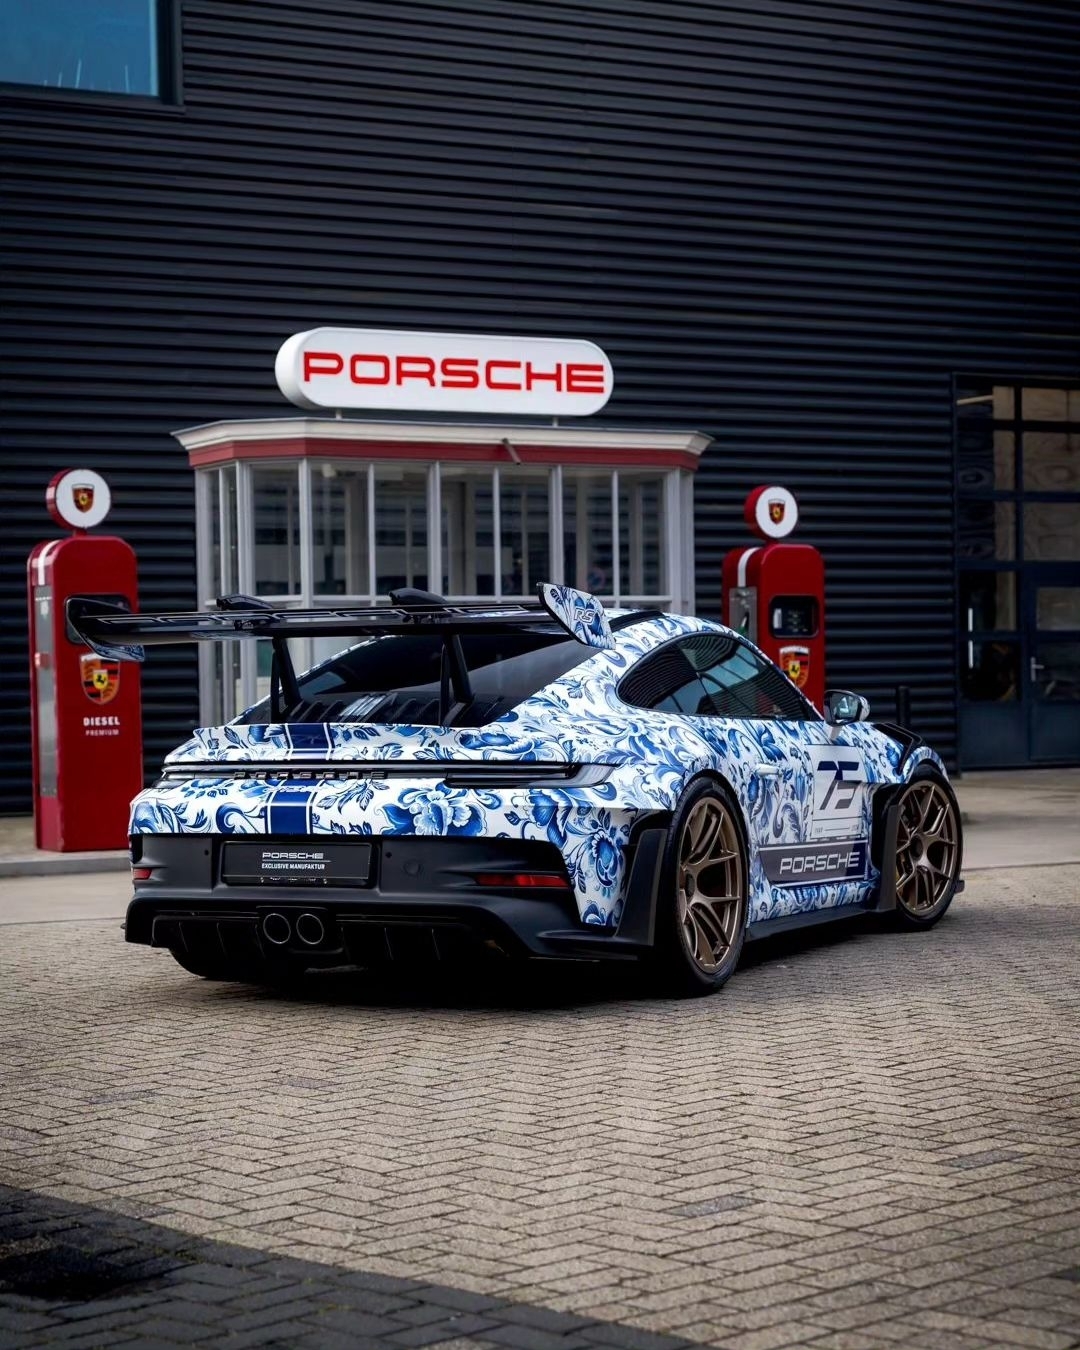 Porsche showed a unique “porcelain” 911 with Gzhel painting